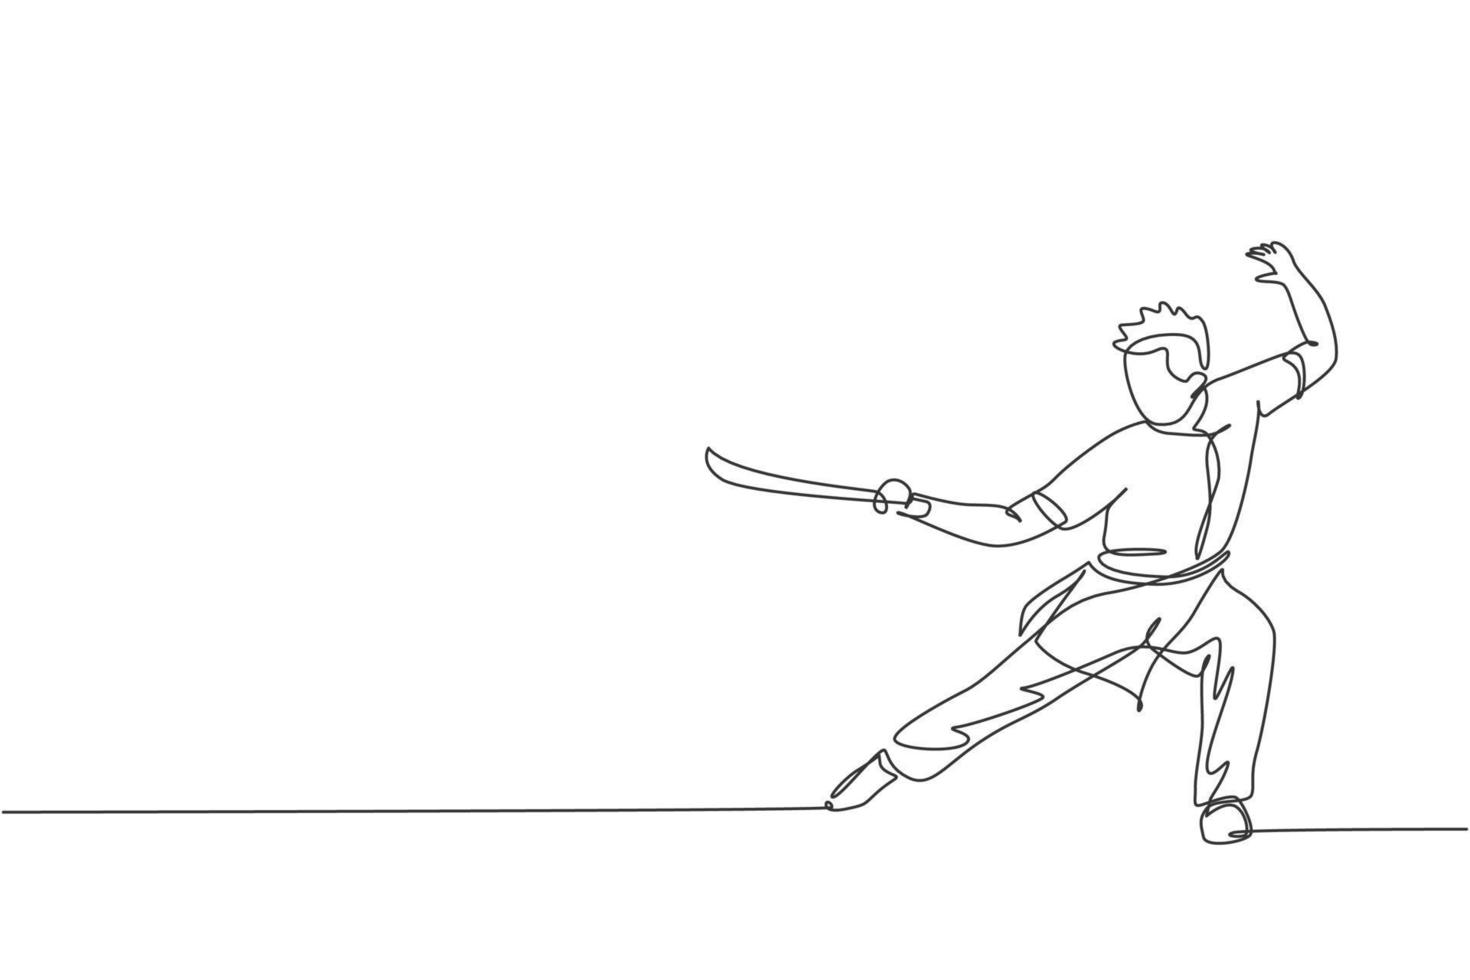 un disegno a linea continua del giovane maestro di wushu, guerriero di kung fu in kimono con spada in allenamento. concetto di concorso sportivo di arte marziale. illustrazione grafica vettoriale dinamica con disegno a linea singola